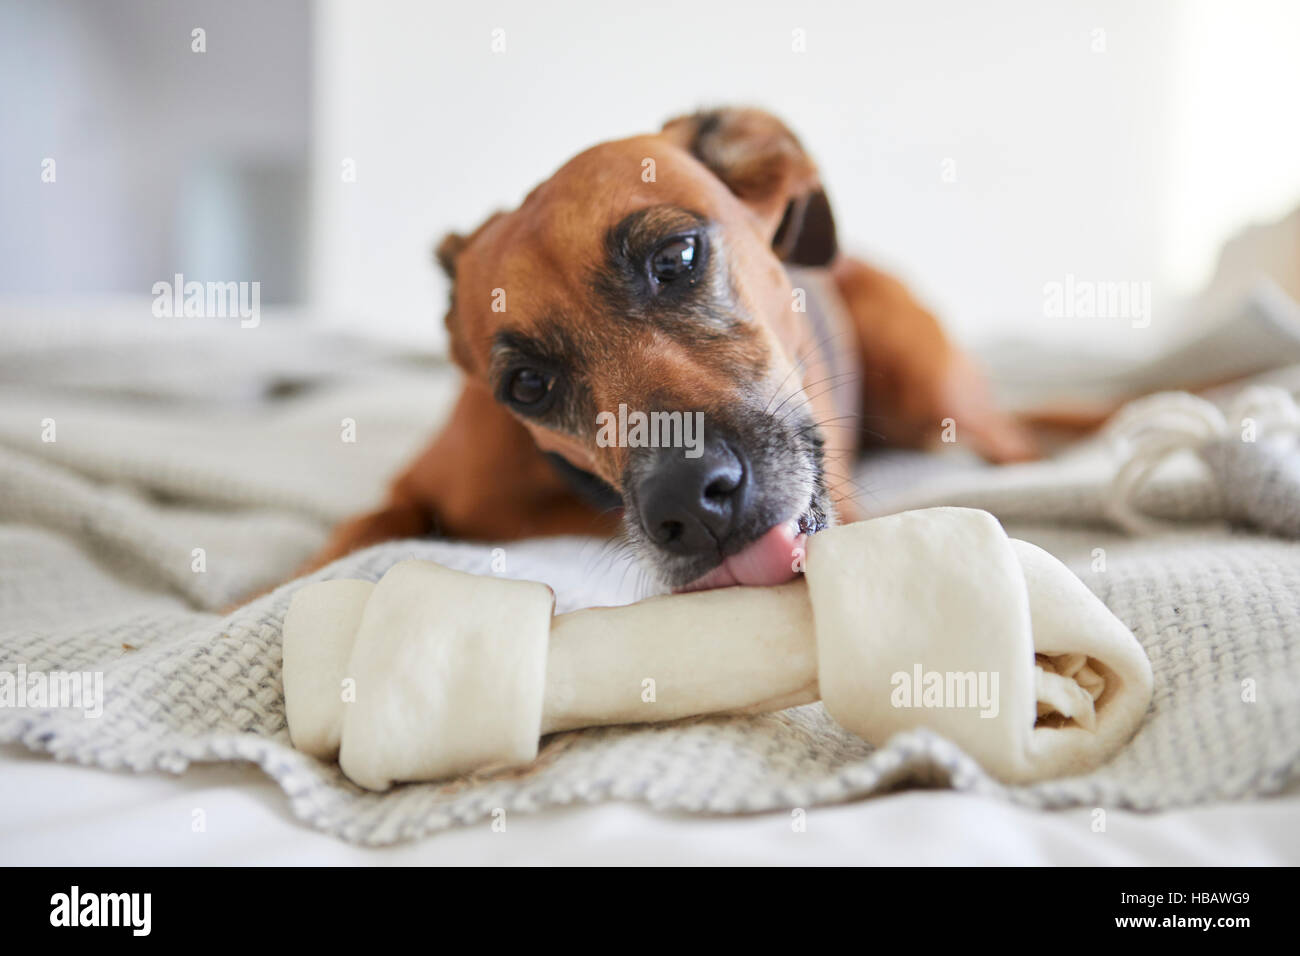 Cane sulla coperta leccare osso di cane Foto Stock